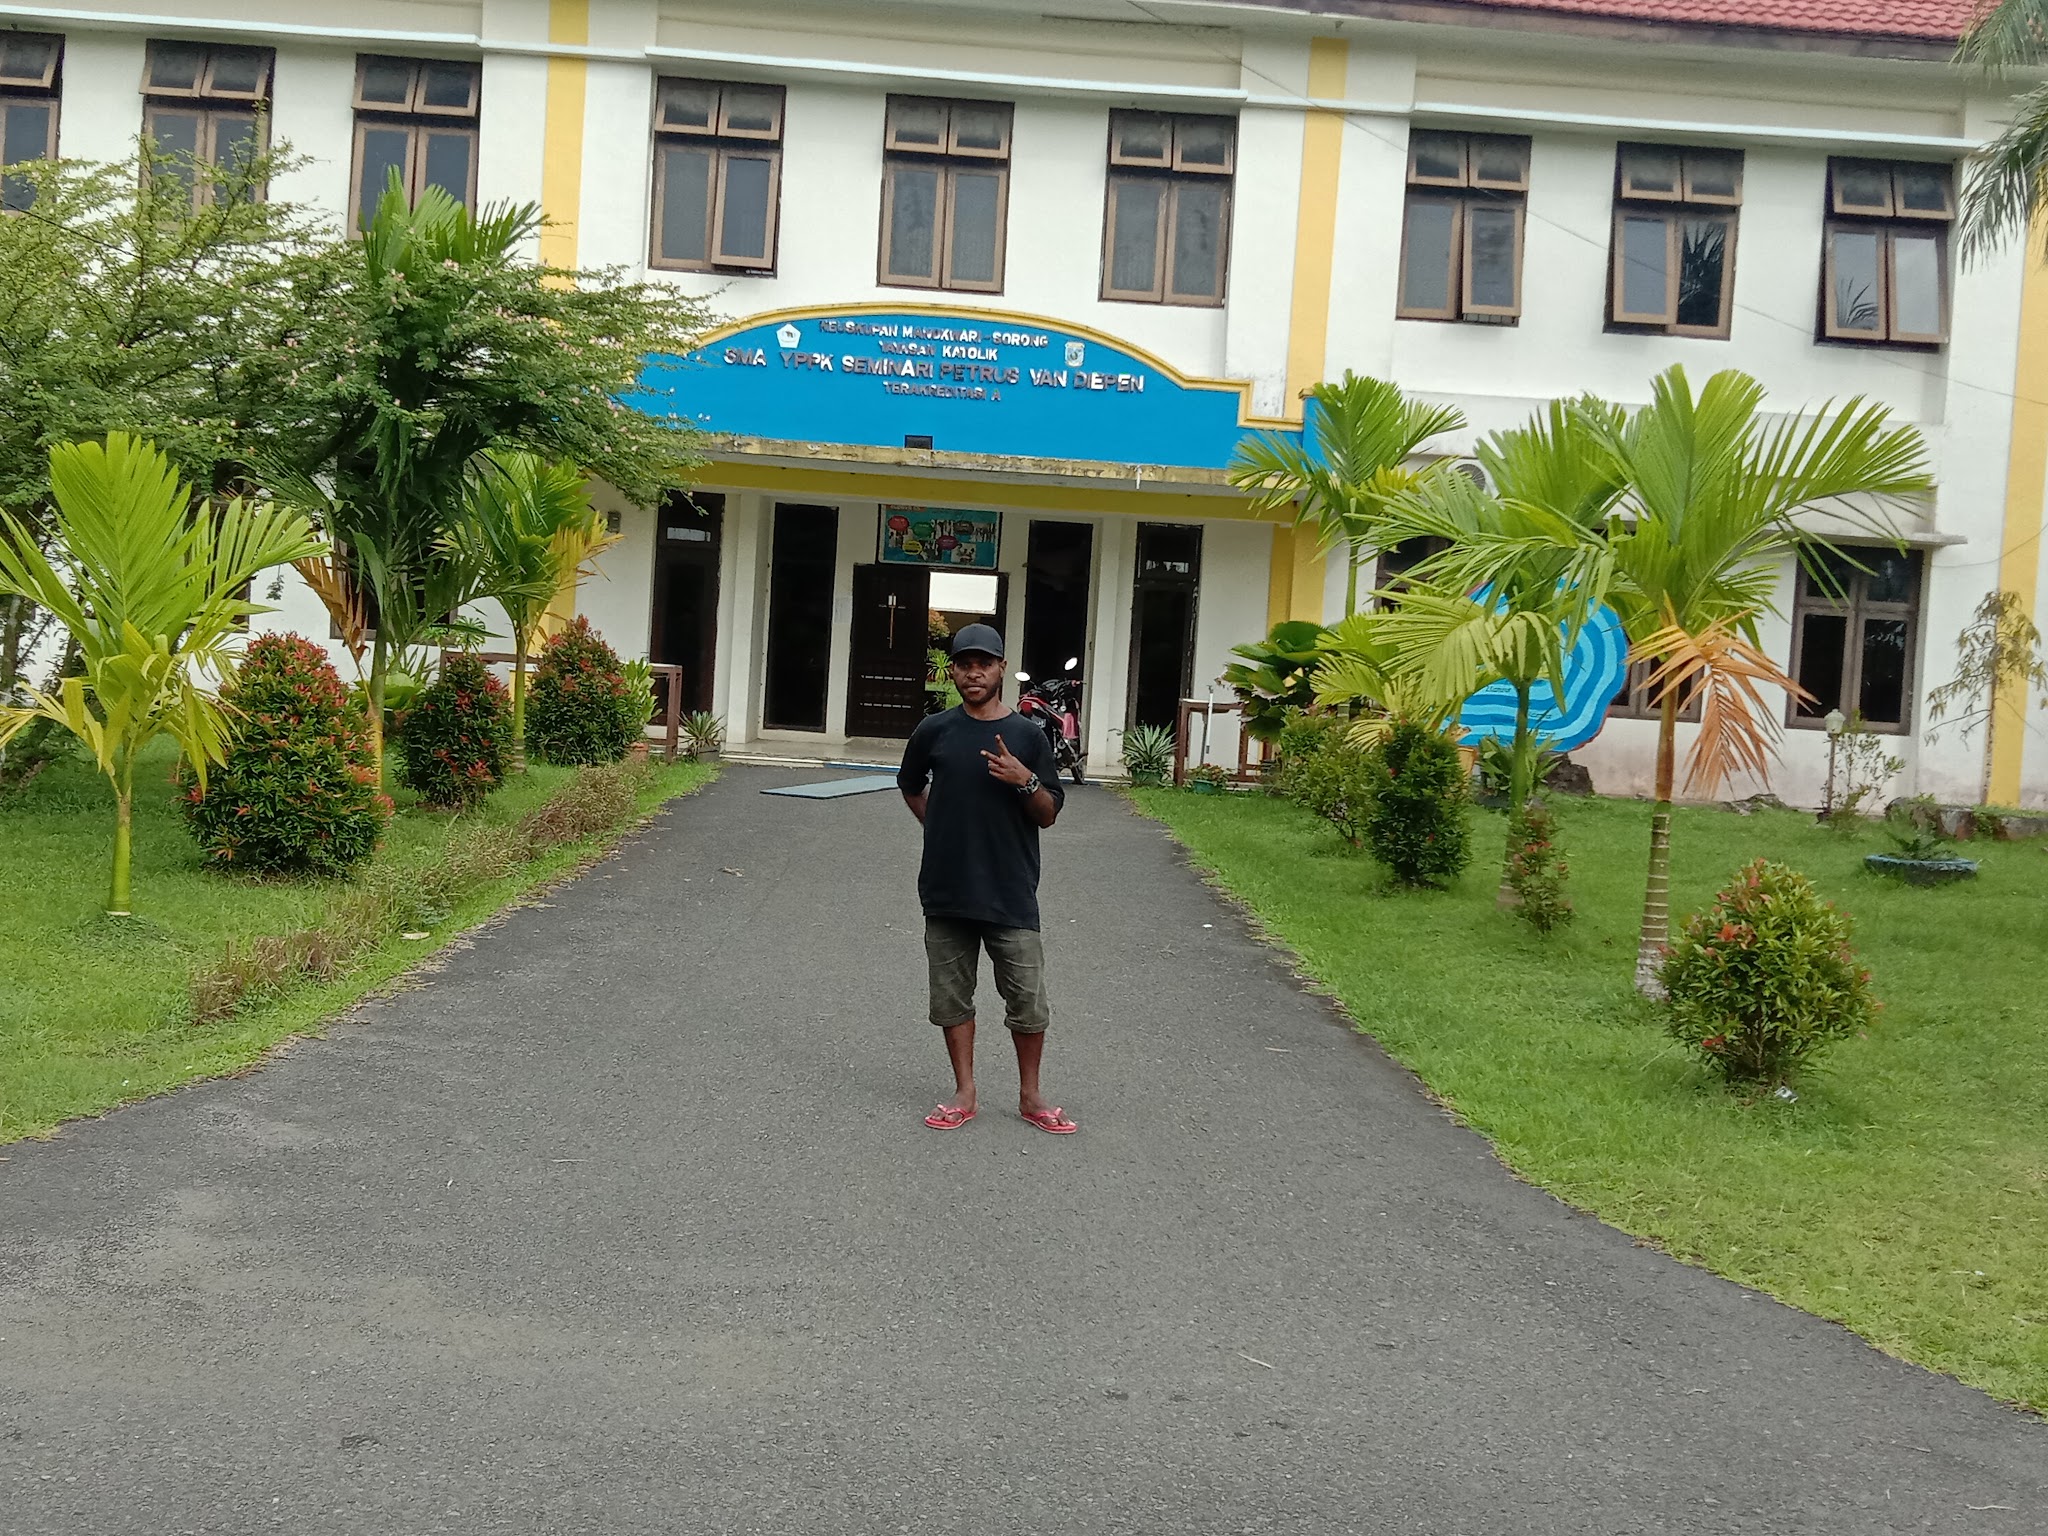 Foto SMP  Yppk Seminari Petrus Van Diepen Kabupaten Sorong, Kab. Sorong